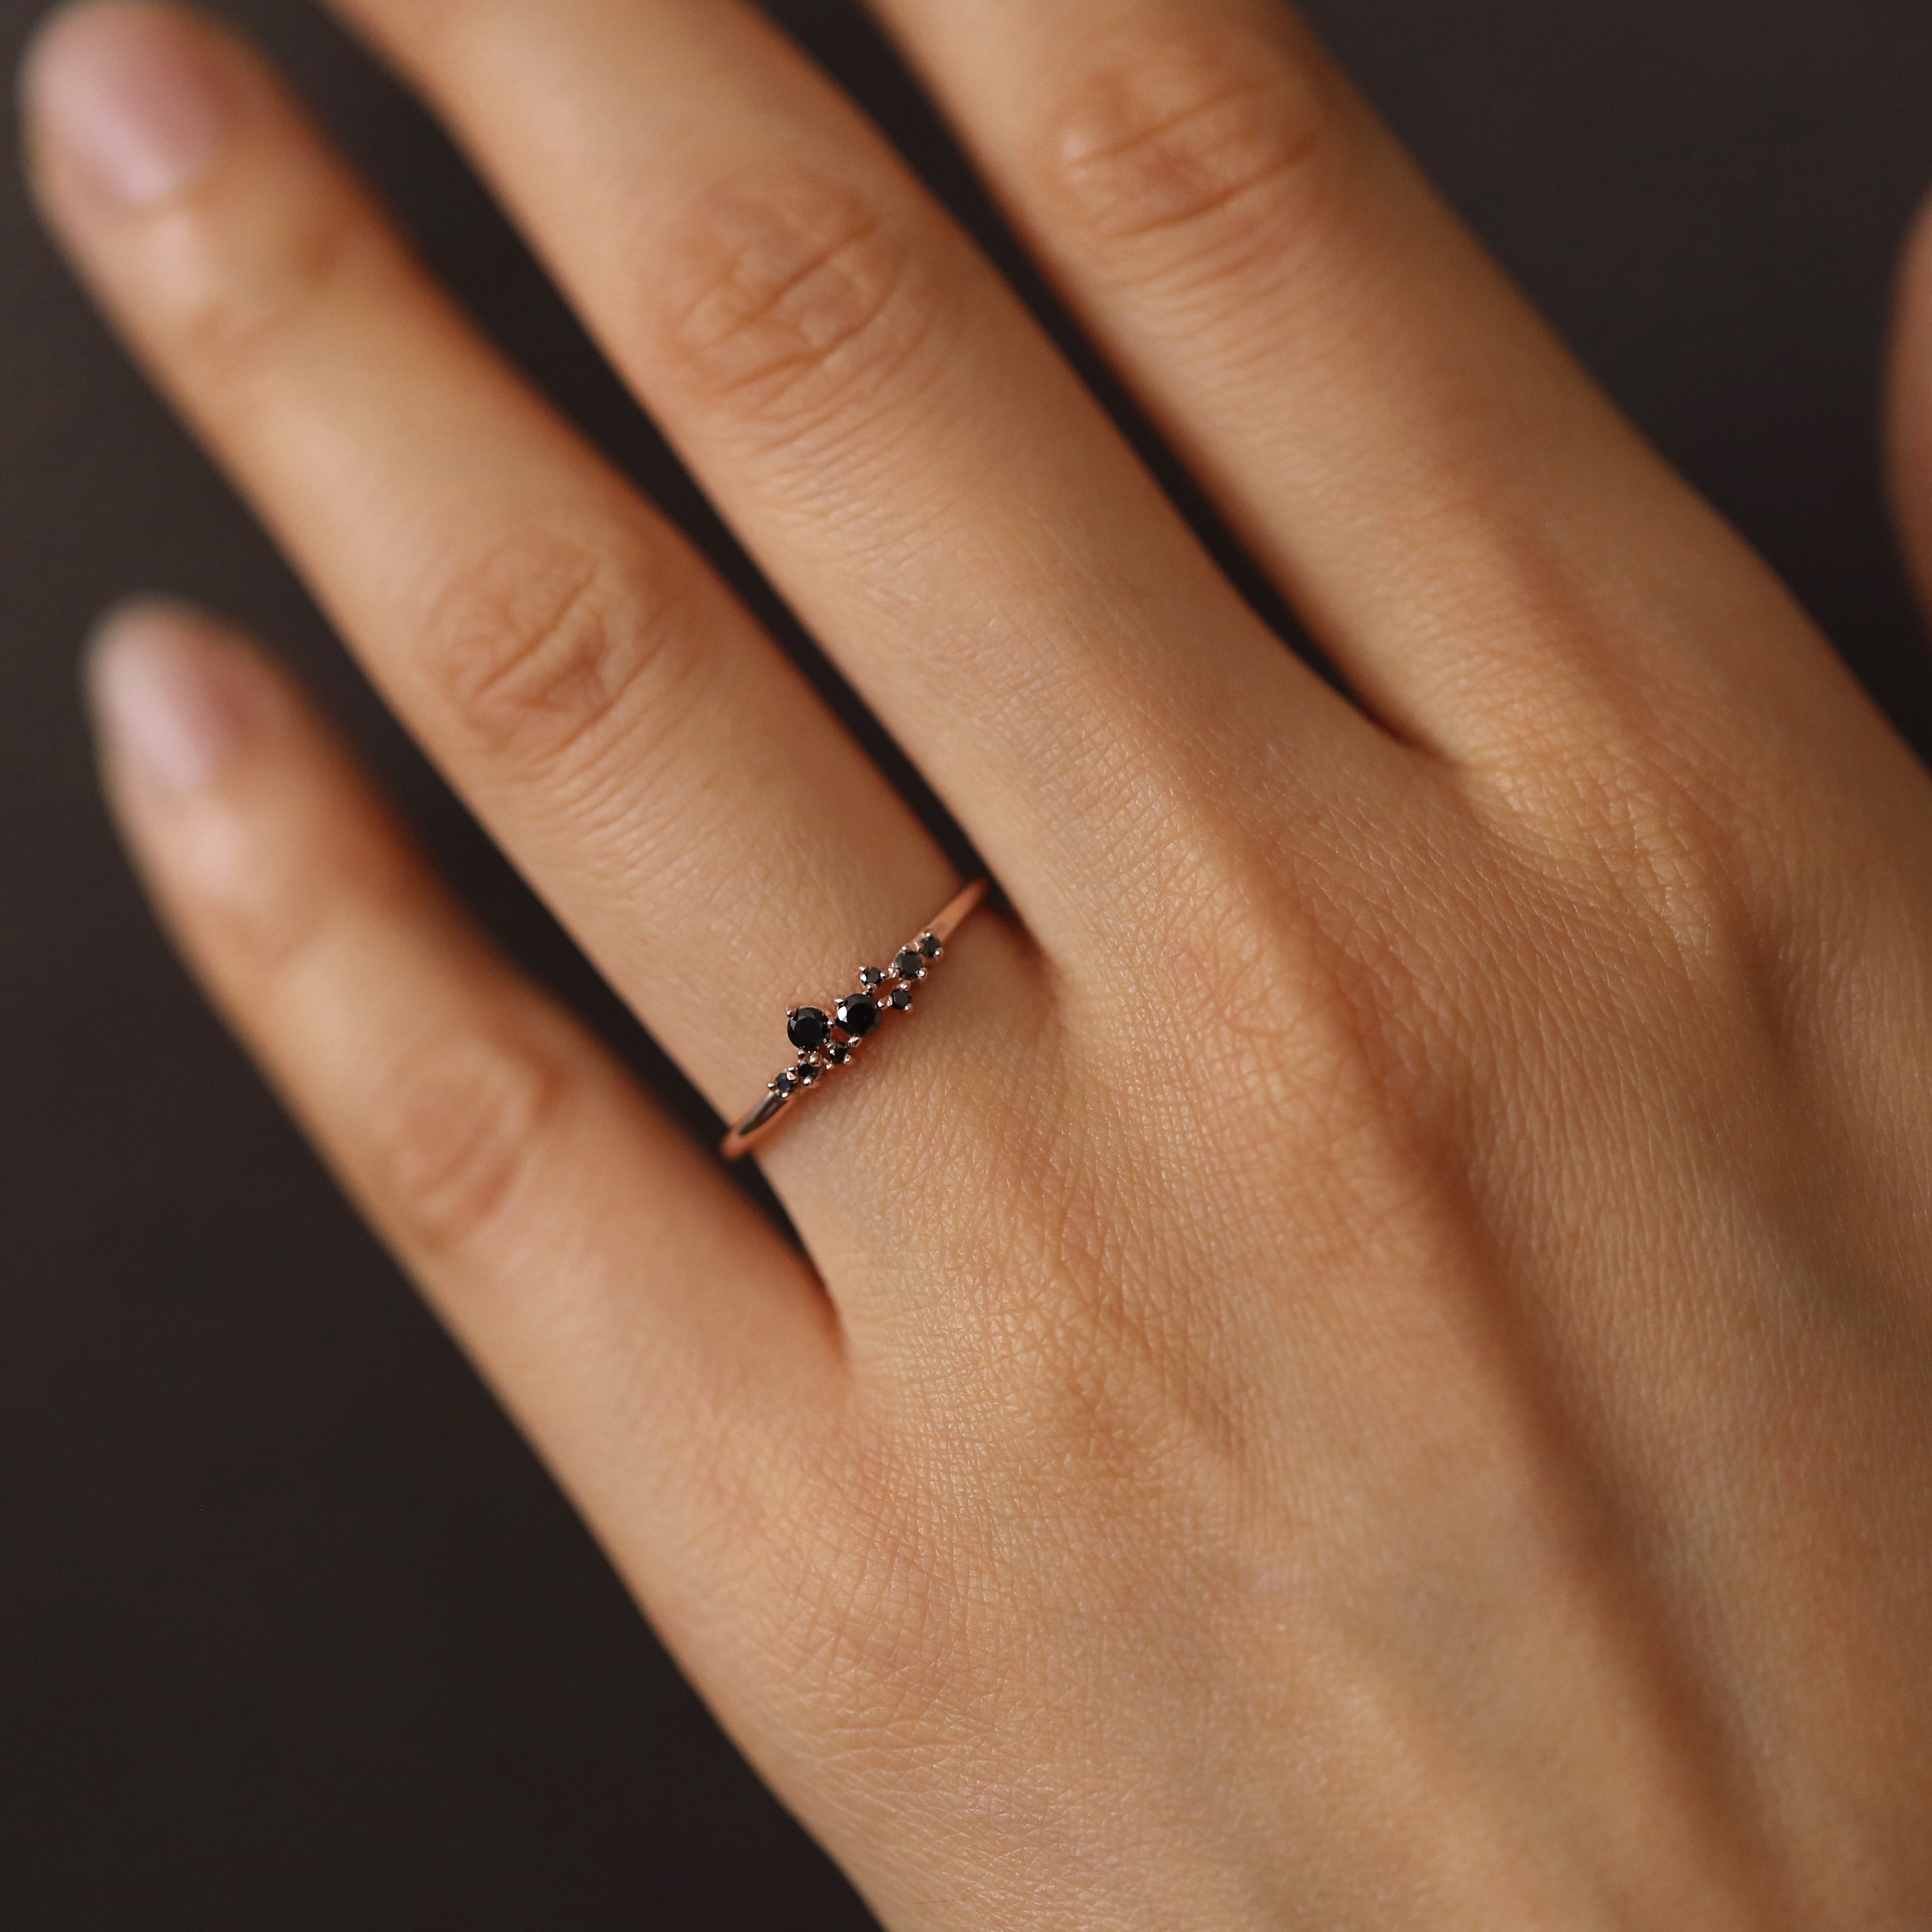 Zwarte Diamant Trouwring Zwarte Diamanten Cluster Ring Cluster Zwarte Diamant Ring Sieraden Ringen Ringen met meerdere stenen Minimalistische Zwarte Diamanten Ring Zwarte Diamanten Ring 